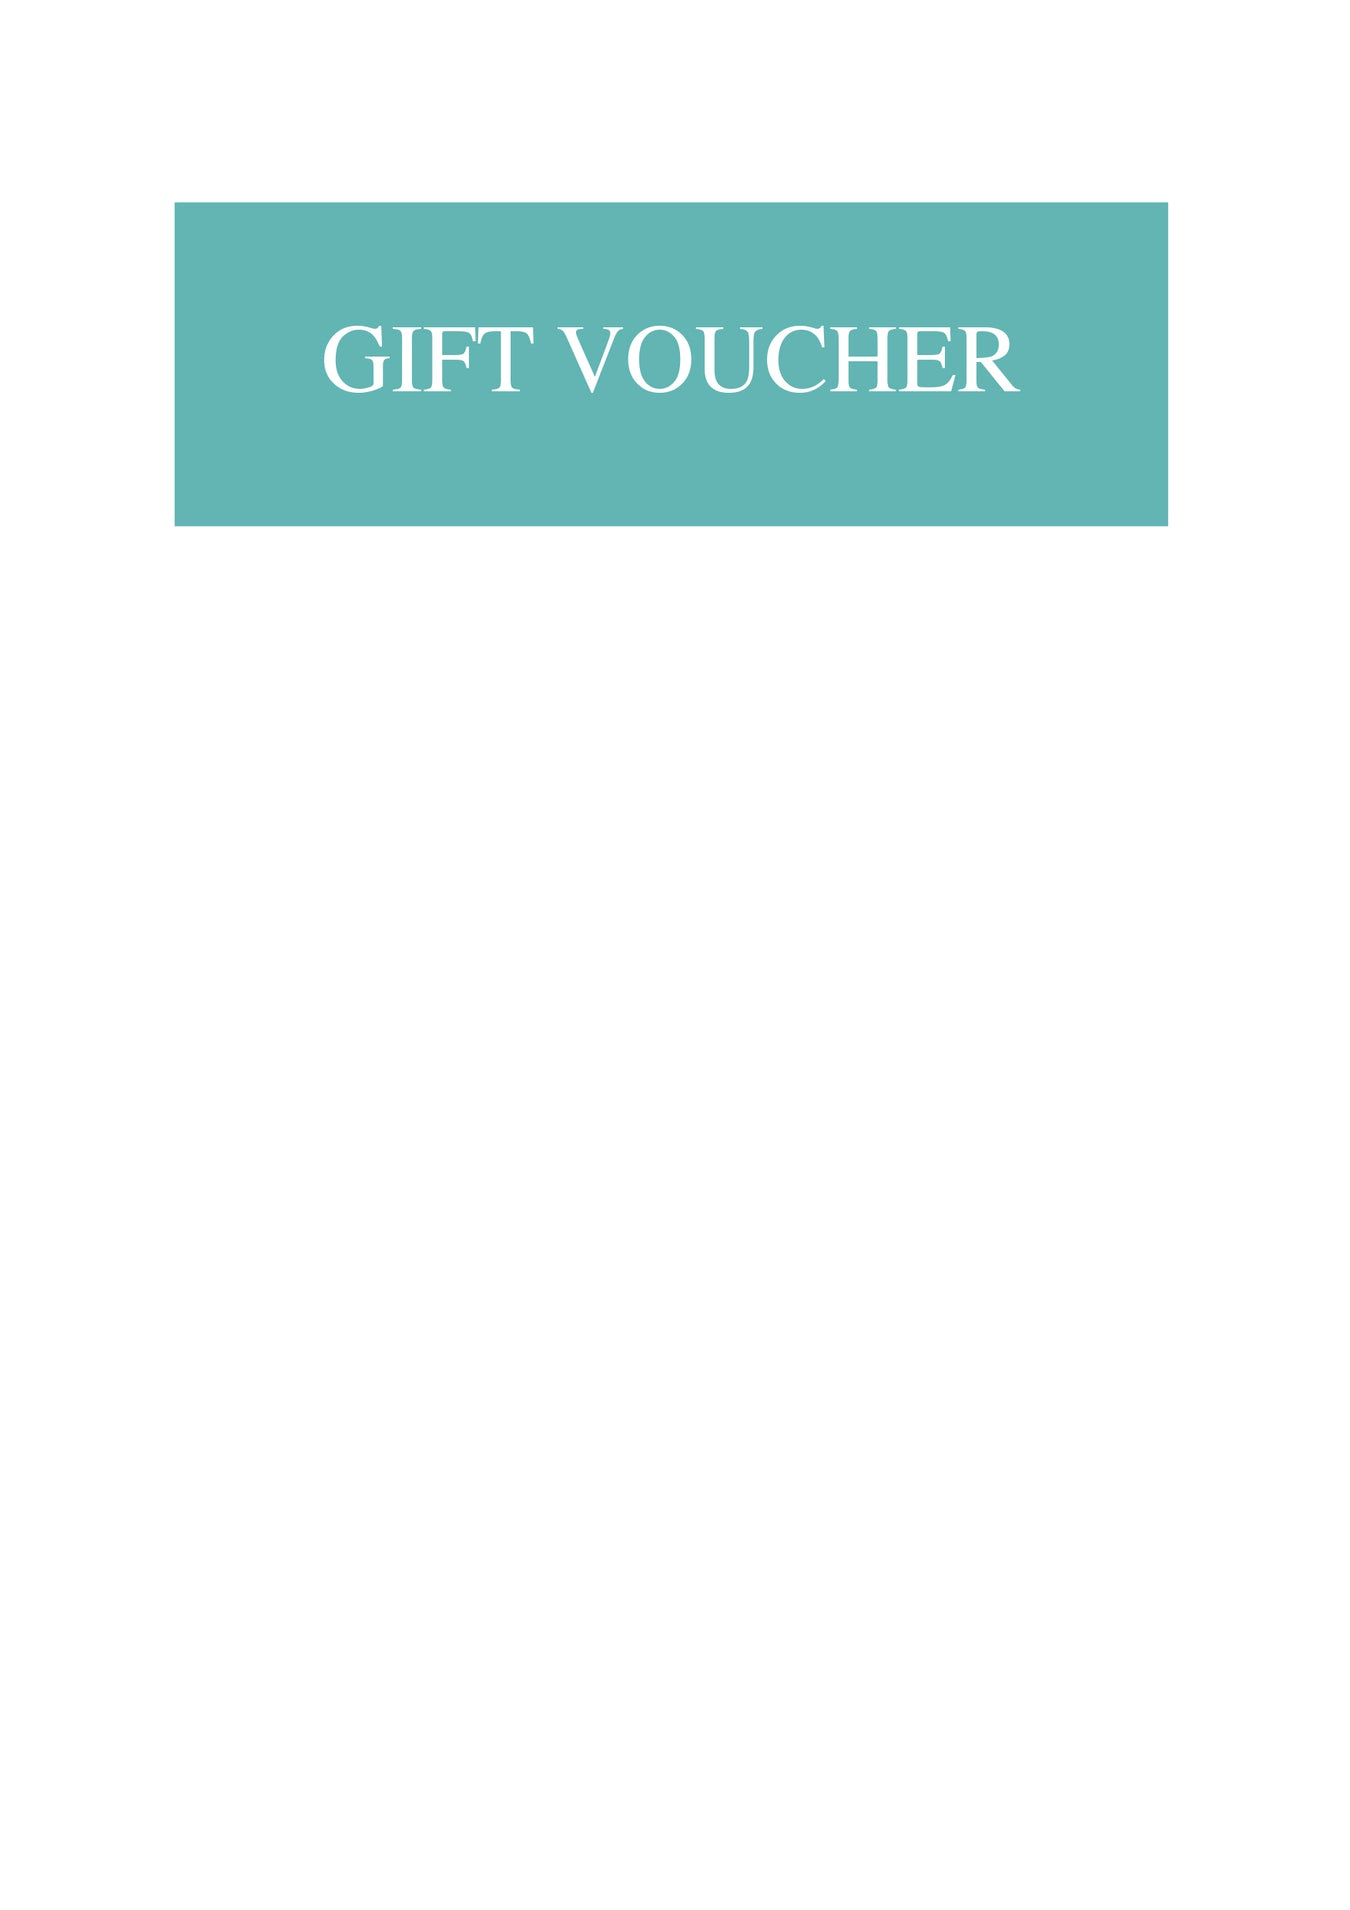 Judith Glue Gift Vouchers